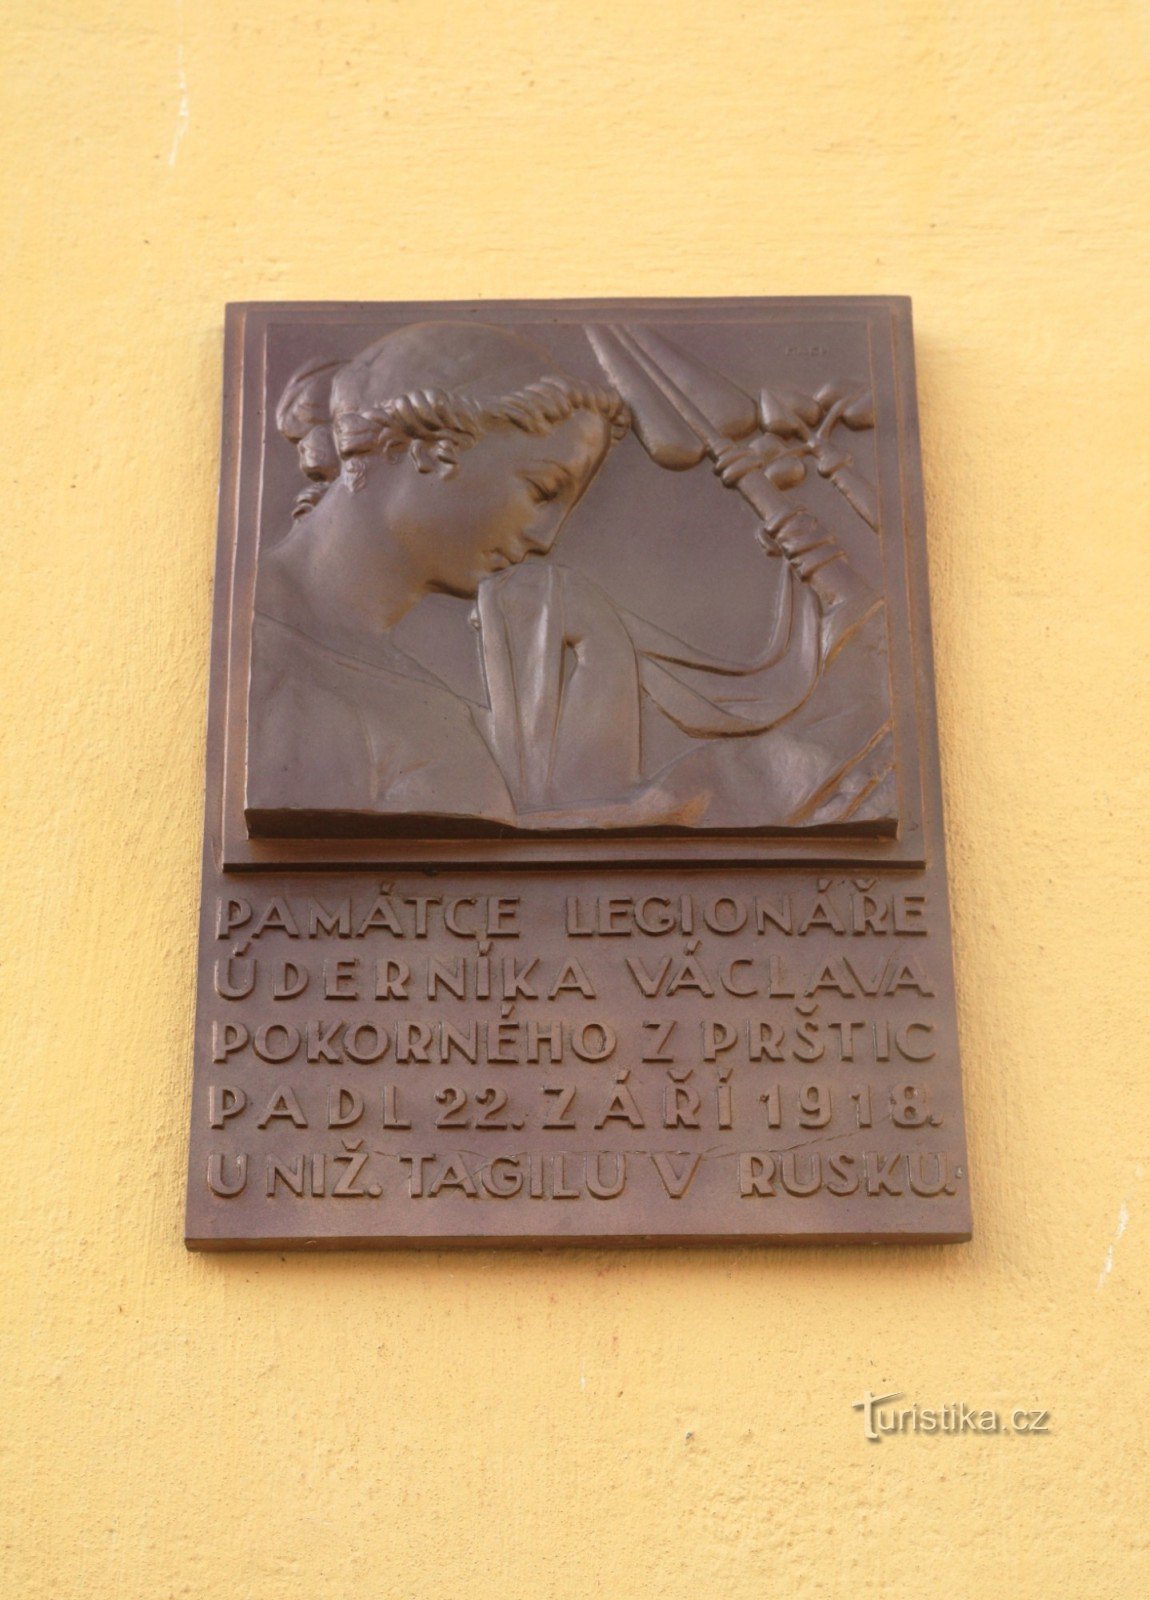 Václav Pokorný memorial plaque